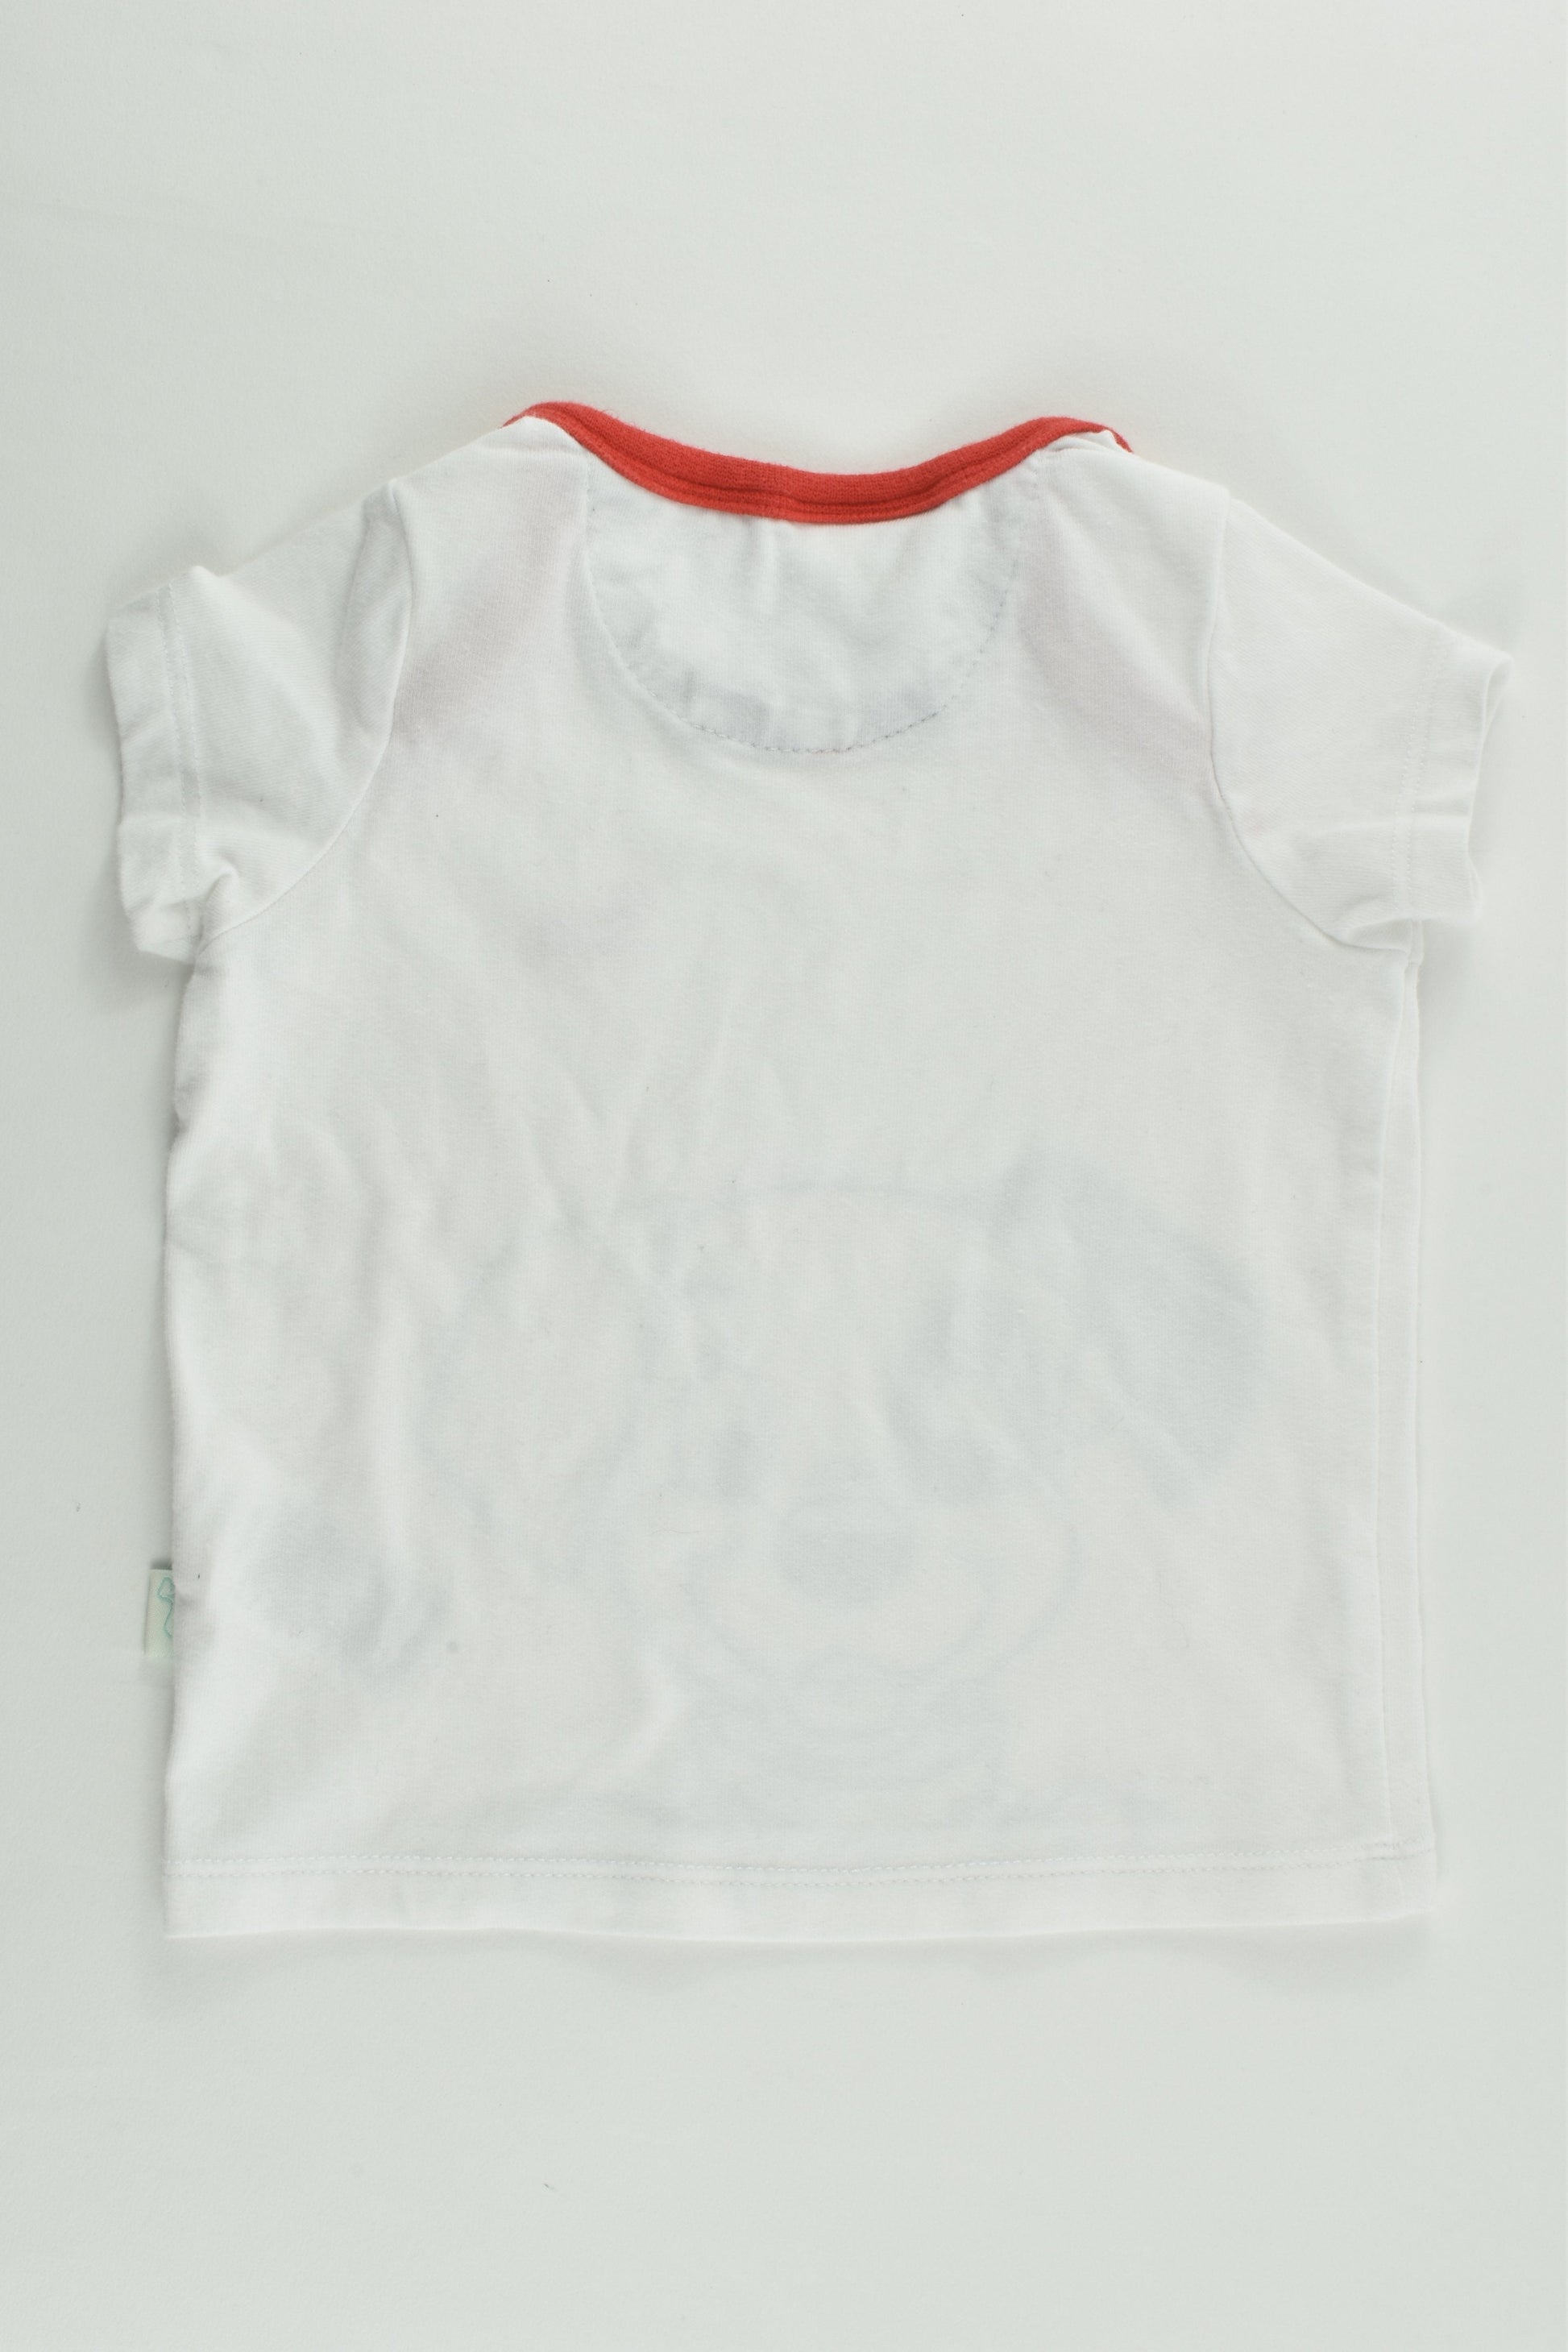 Peter Alexander Size 00 (3/6 months) Disney Dalmatians T-shirt